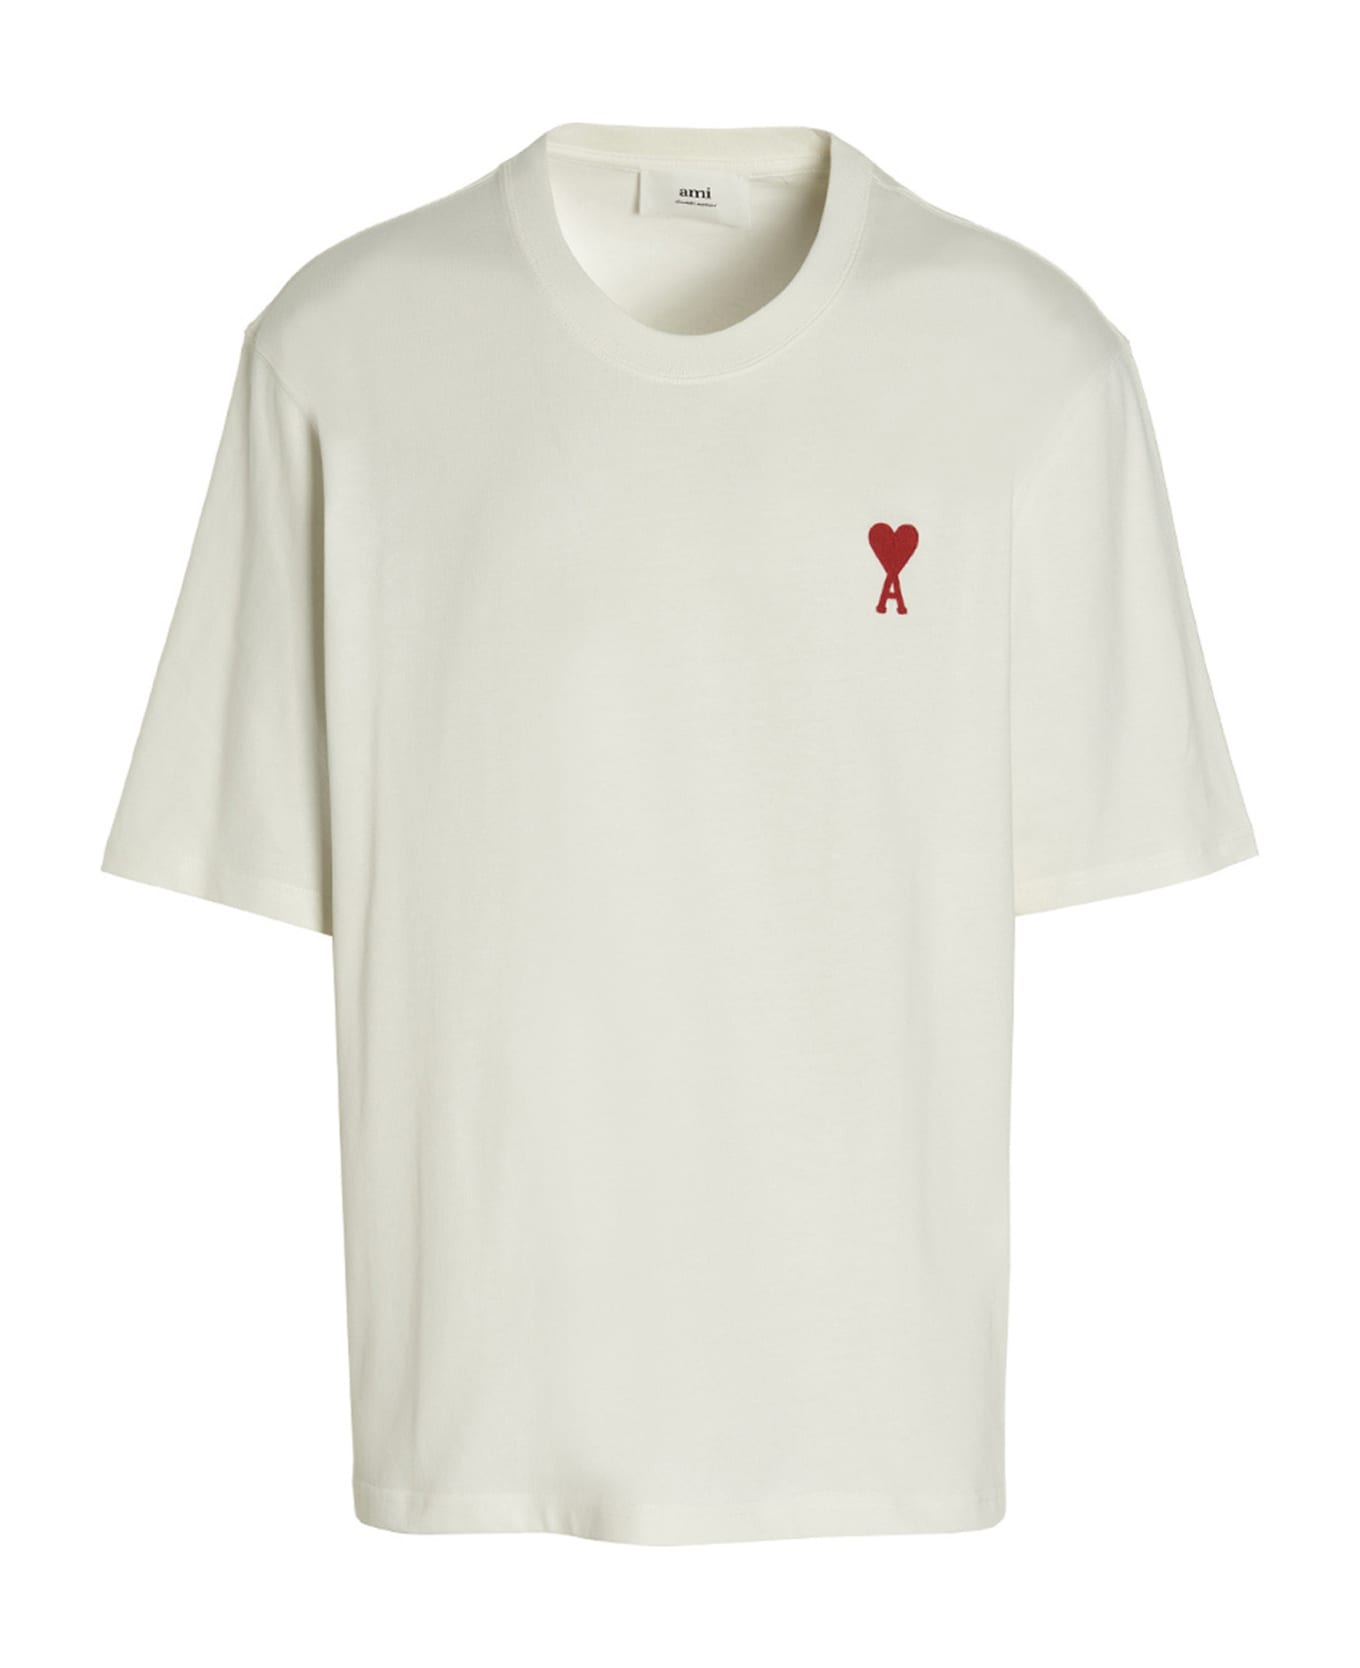 Ami Alexandre Mattiussi 'adc' T-shirt - White Red Tシャツ